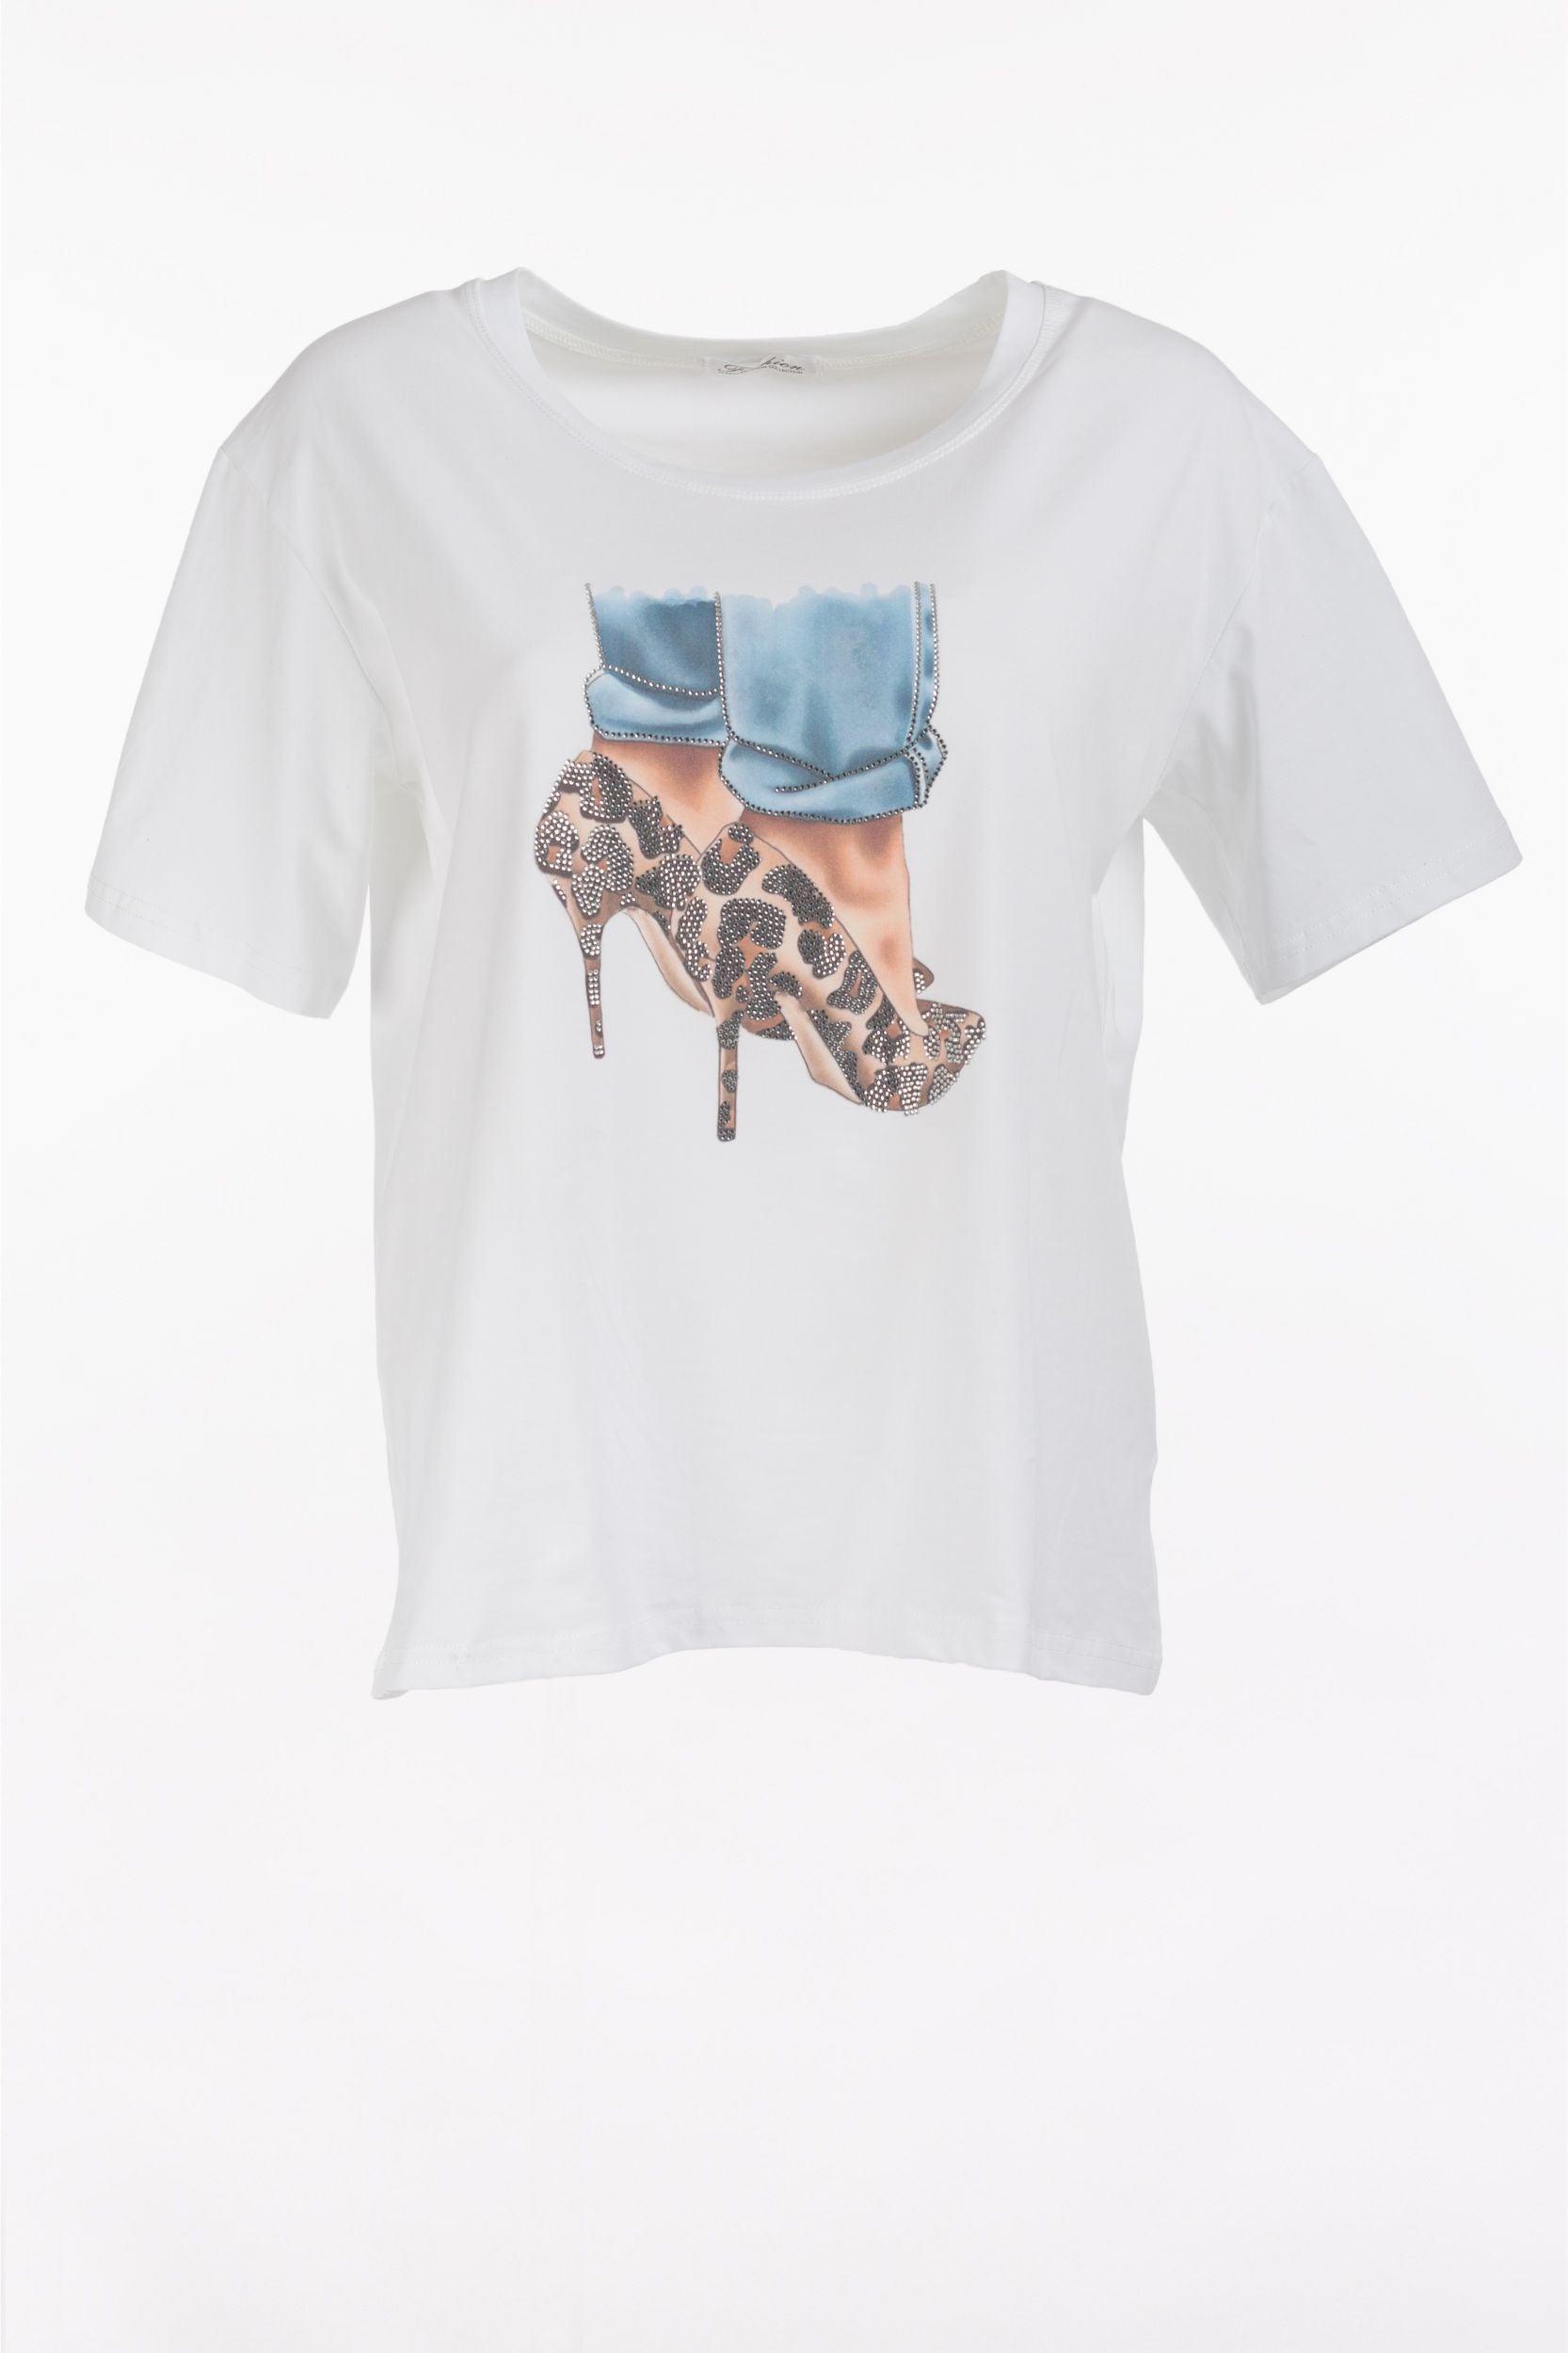 T-Shirt "High Heels" - La Strada